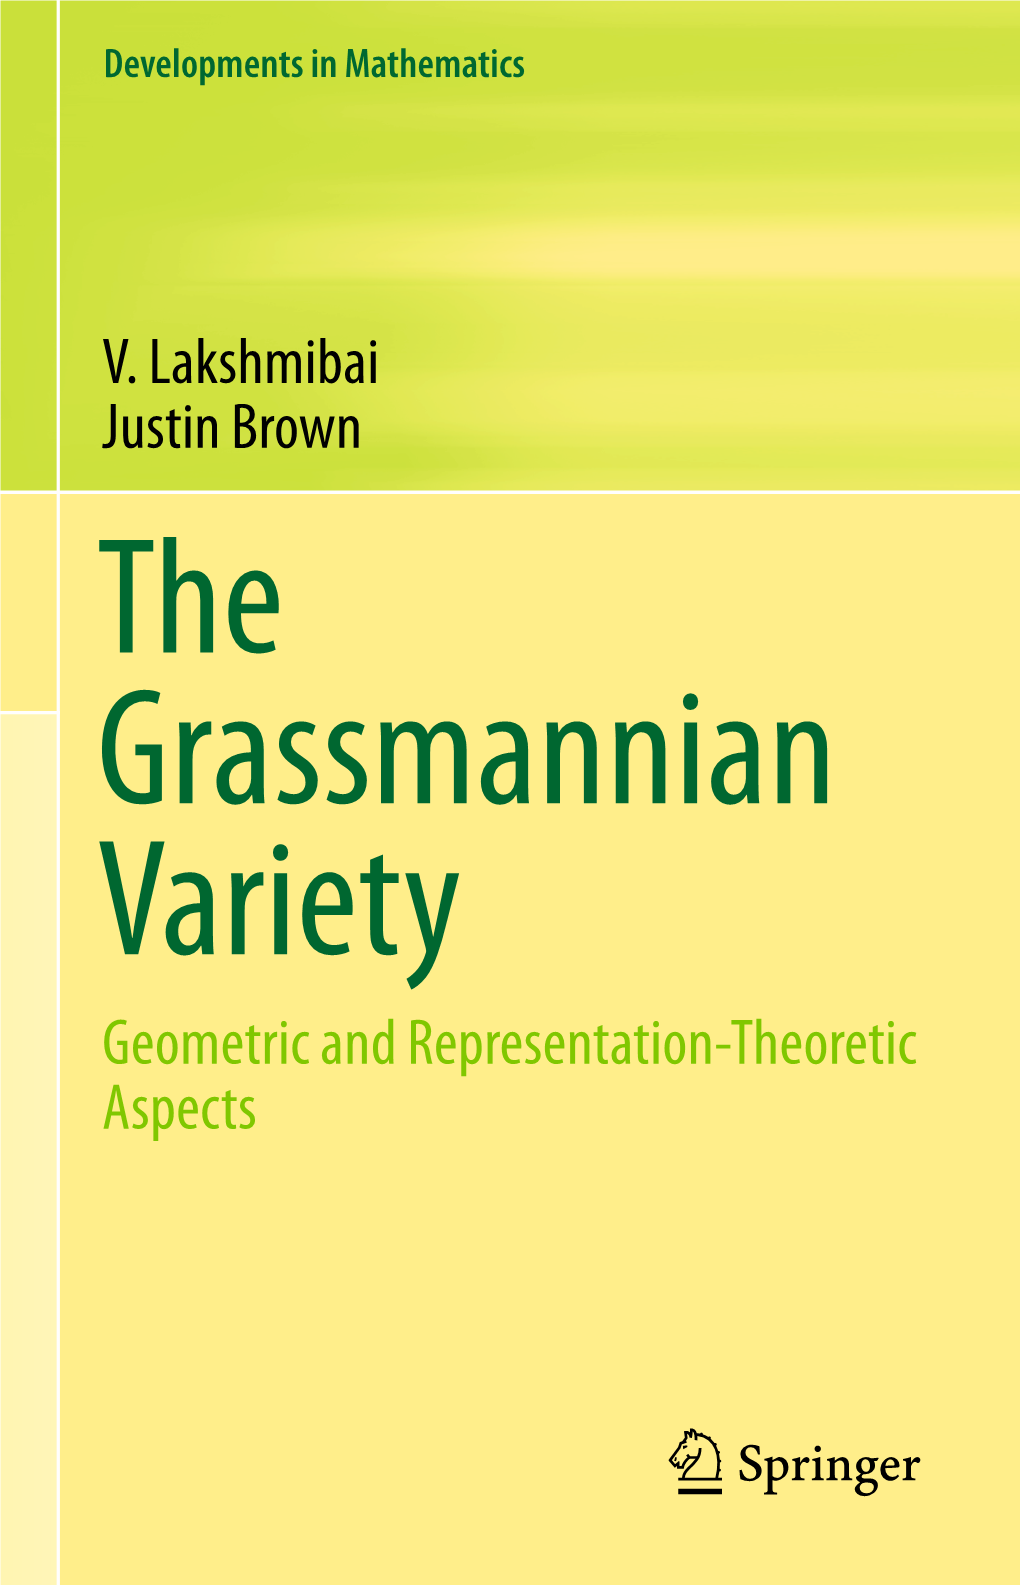 V. Lakshmibai Justin Brown Geometric and Representation-Theoretic